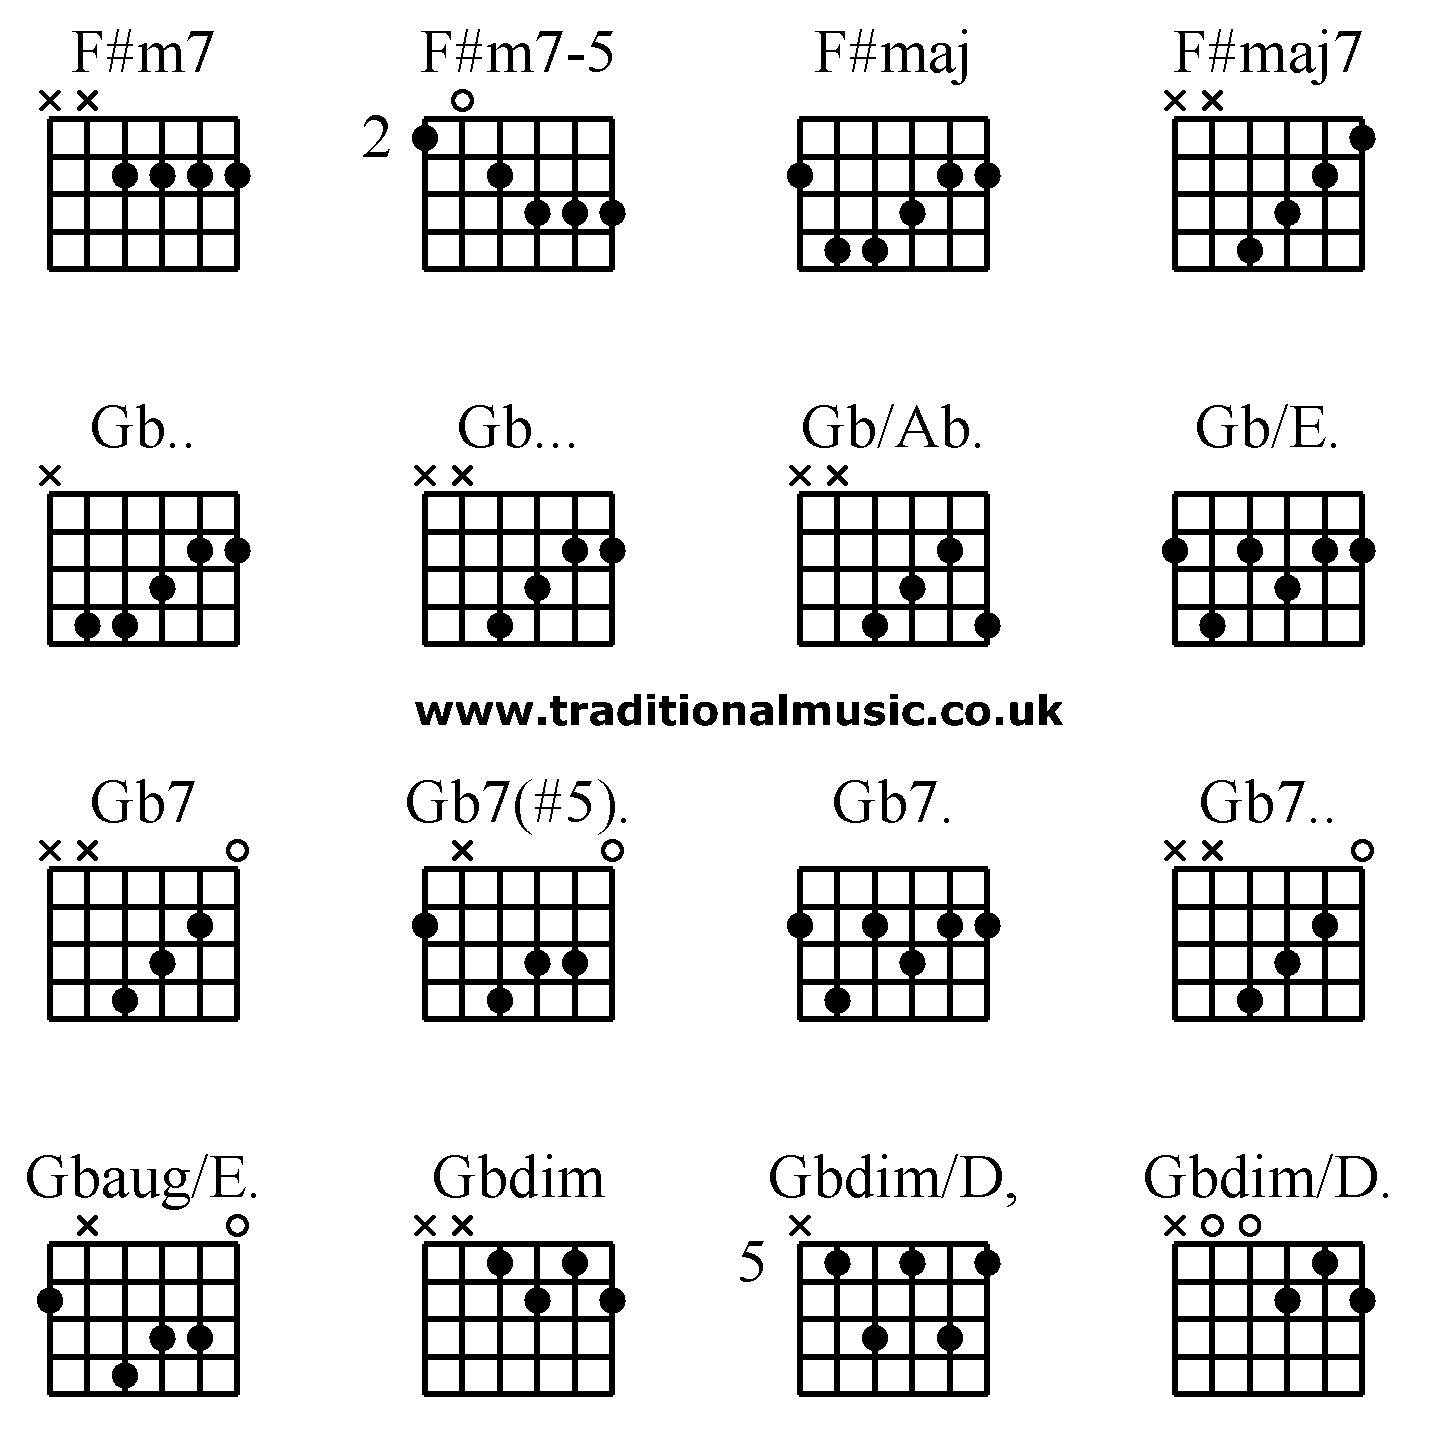 Advanced guitar chords:F#m7 F#m7-5 F#maj F#maj7 Gb.. Gb... Gb/Ab. Gb/E. Gb7 Gb7(#5). Gb7. Gb7.. Gbaug/E. Gbdim Gbdim/D, Gbdim/D.